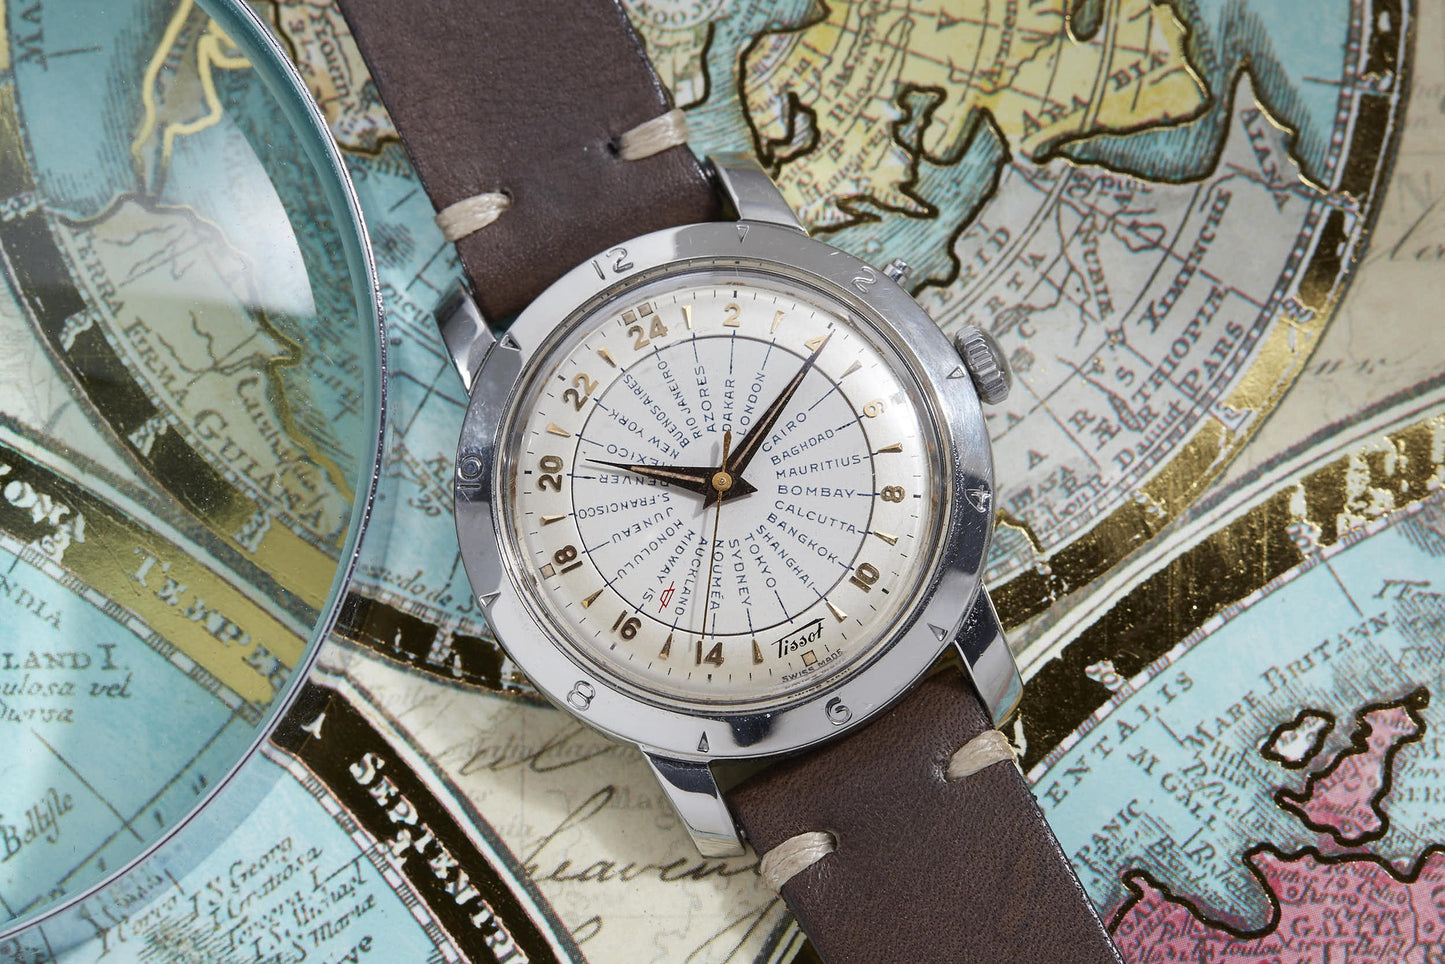 Hr Uplifted Es Tissot Navigator World Time – Analog:Shift